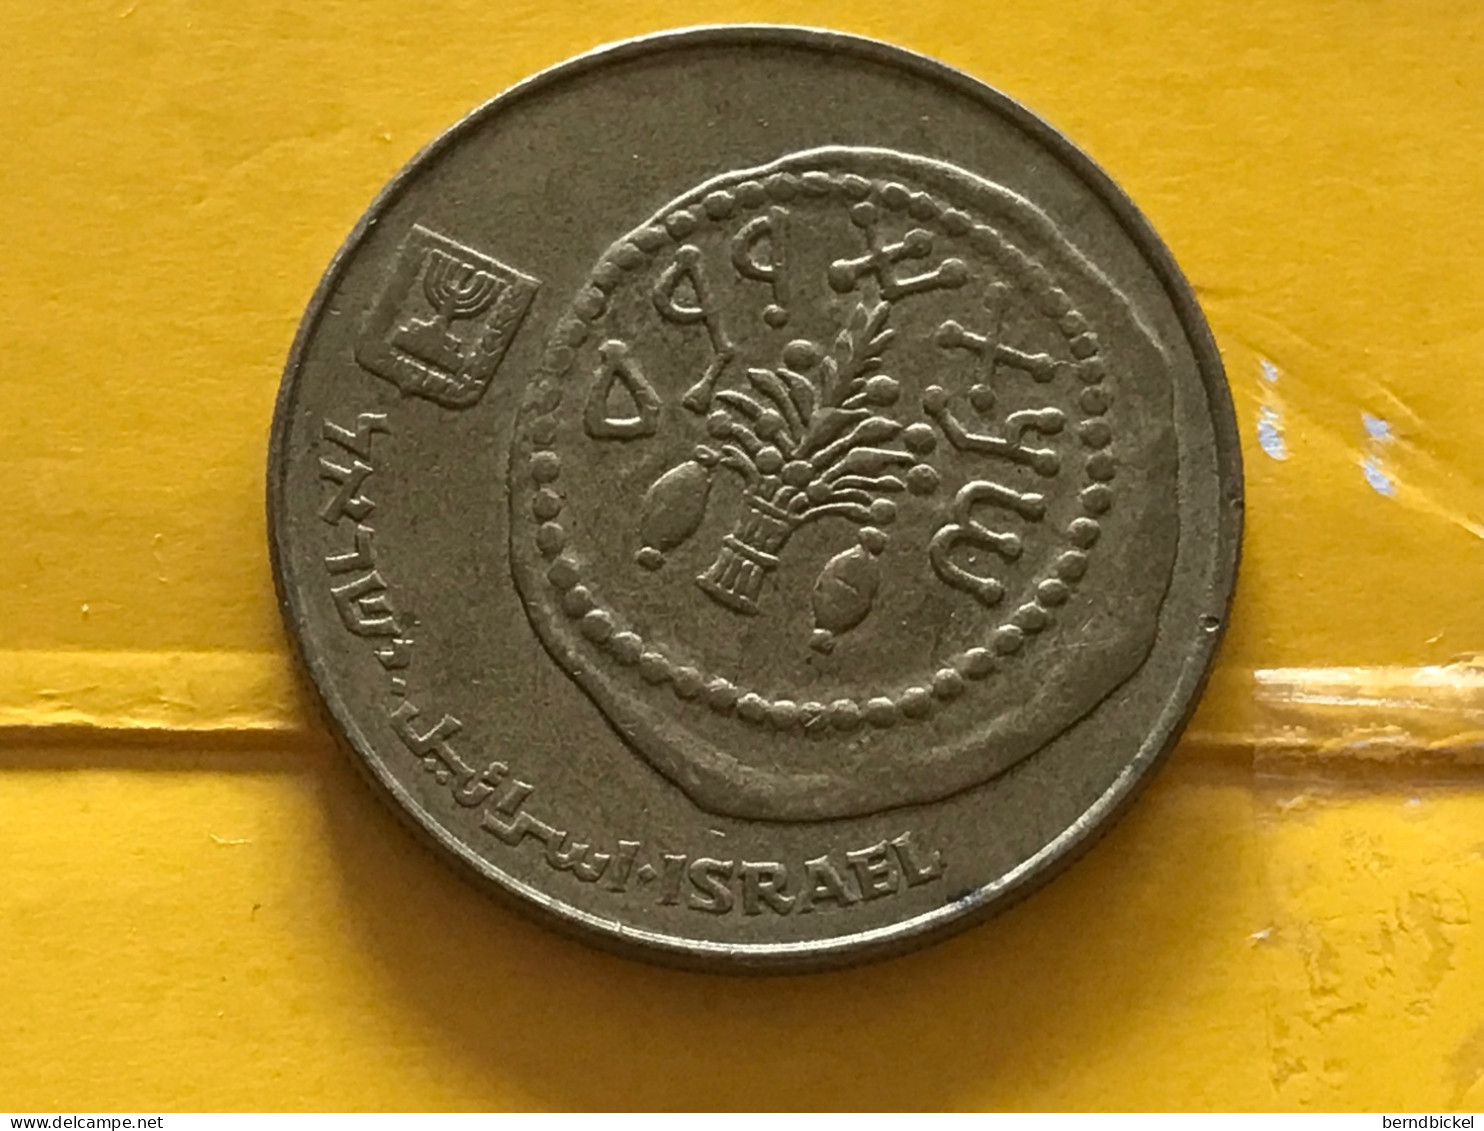 Münze Münzen Umlaufmünze Israel 50 Schekel 1984 - Israel